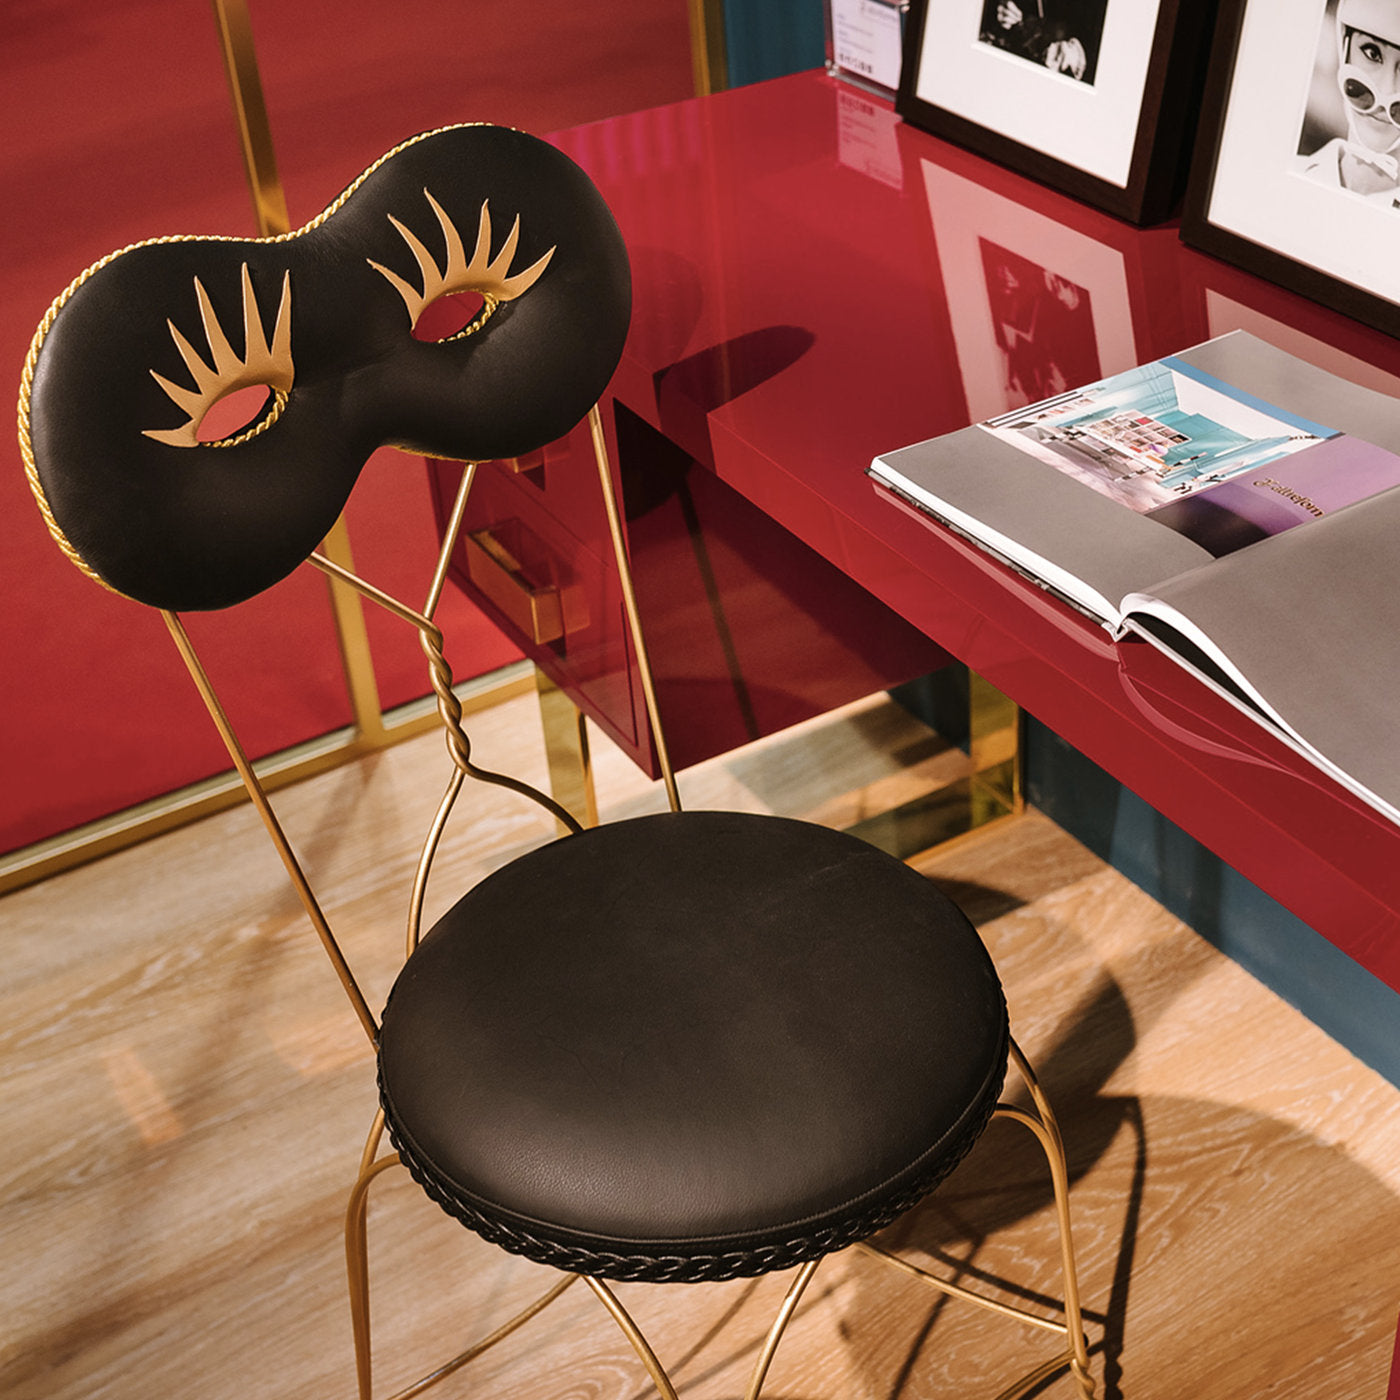 Maschera Chair by Moschino - Alternative view 3